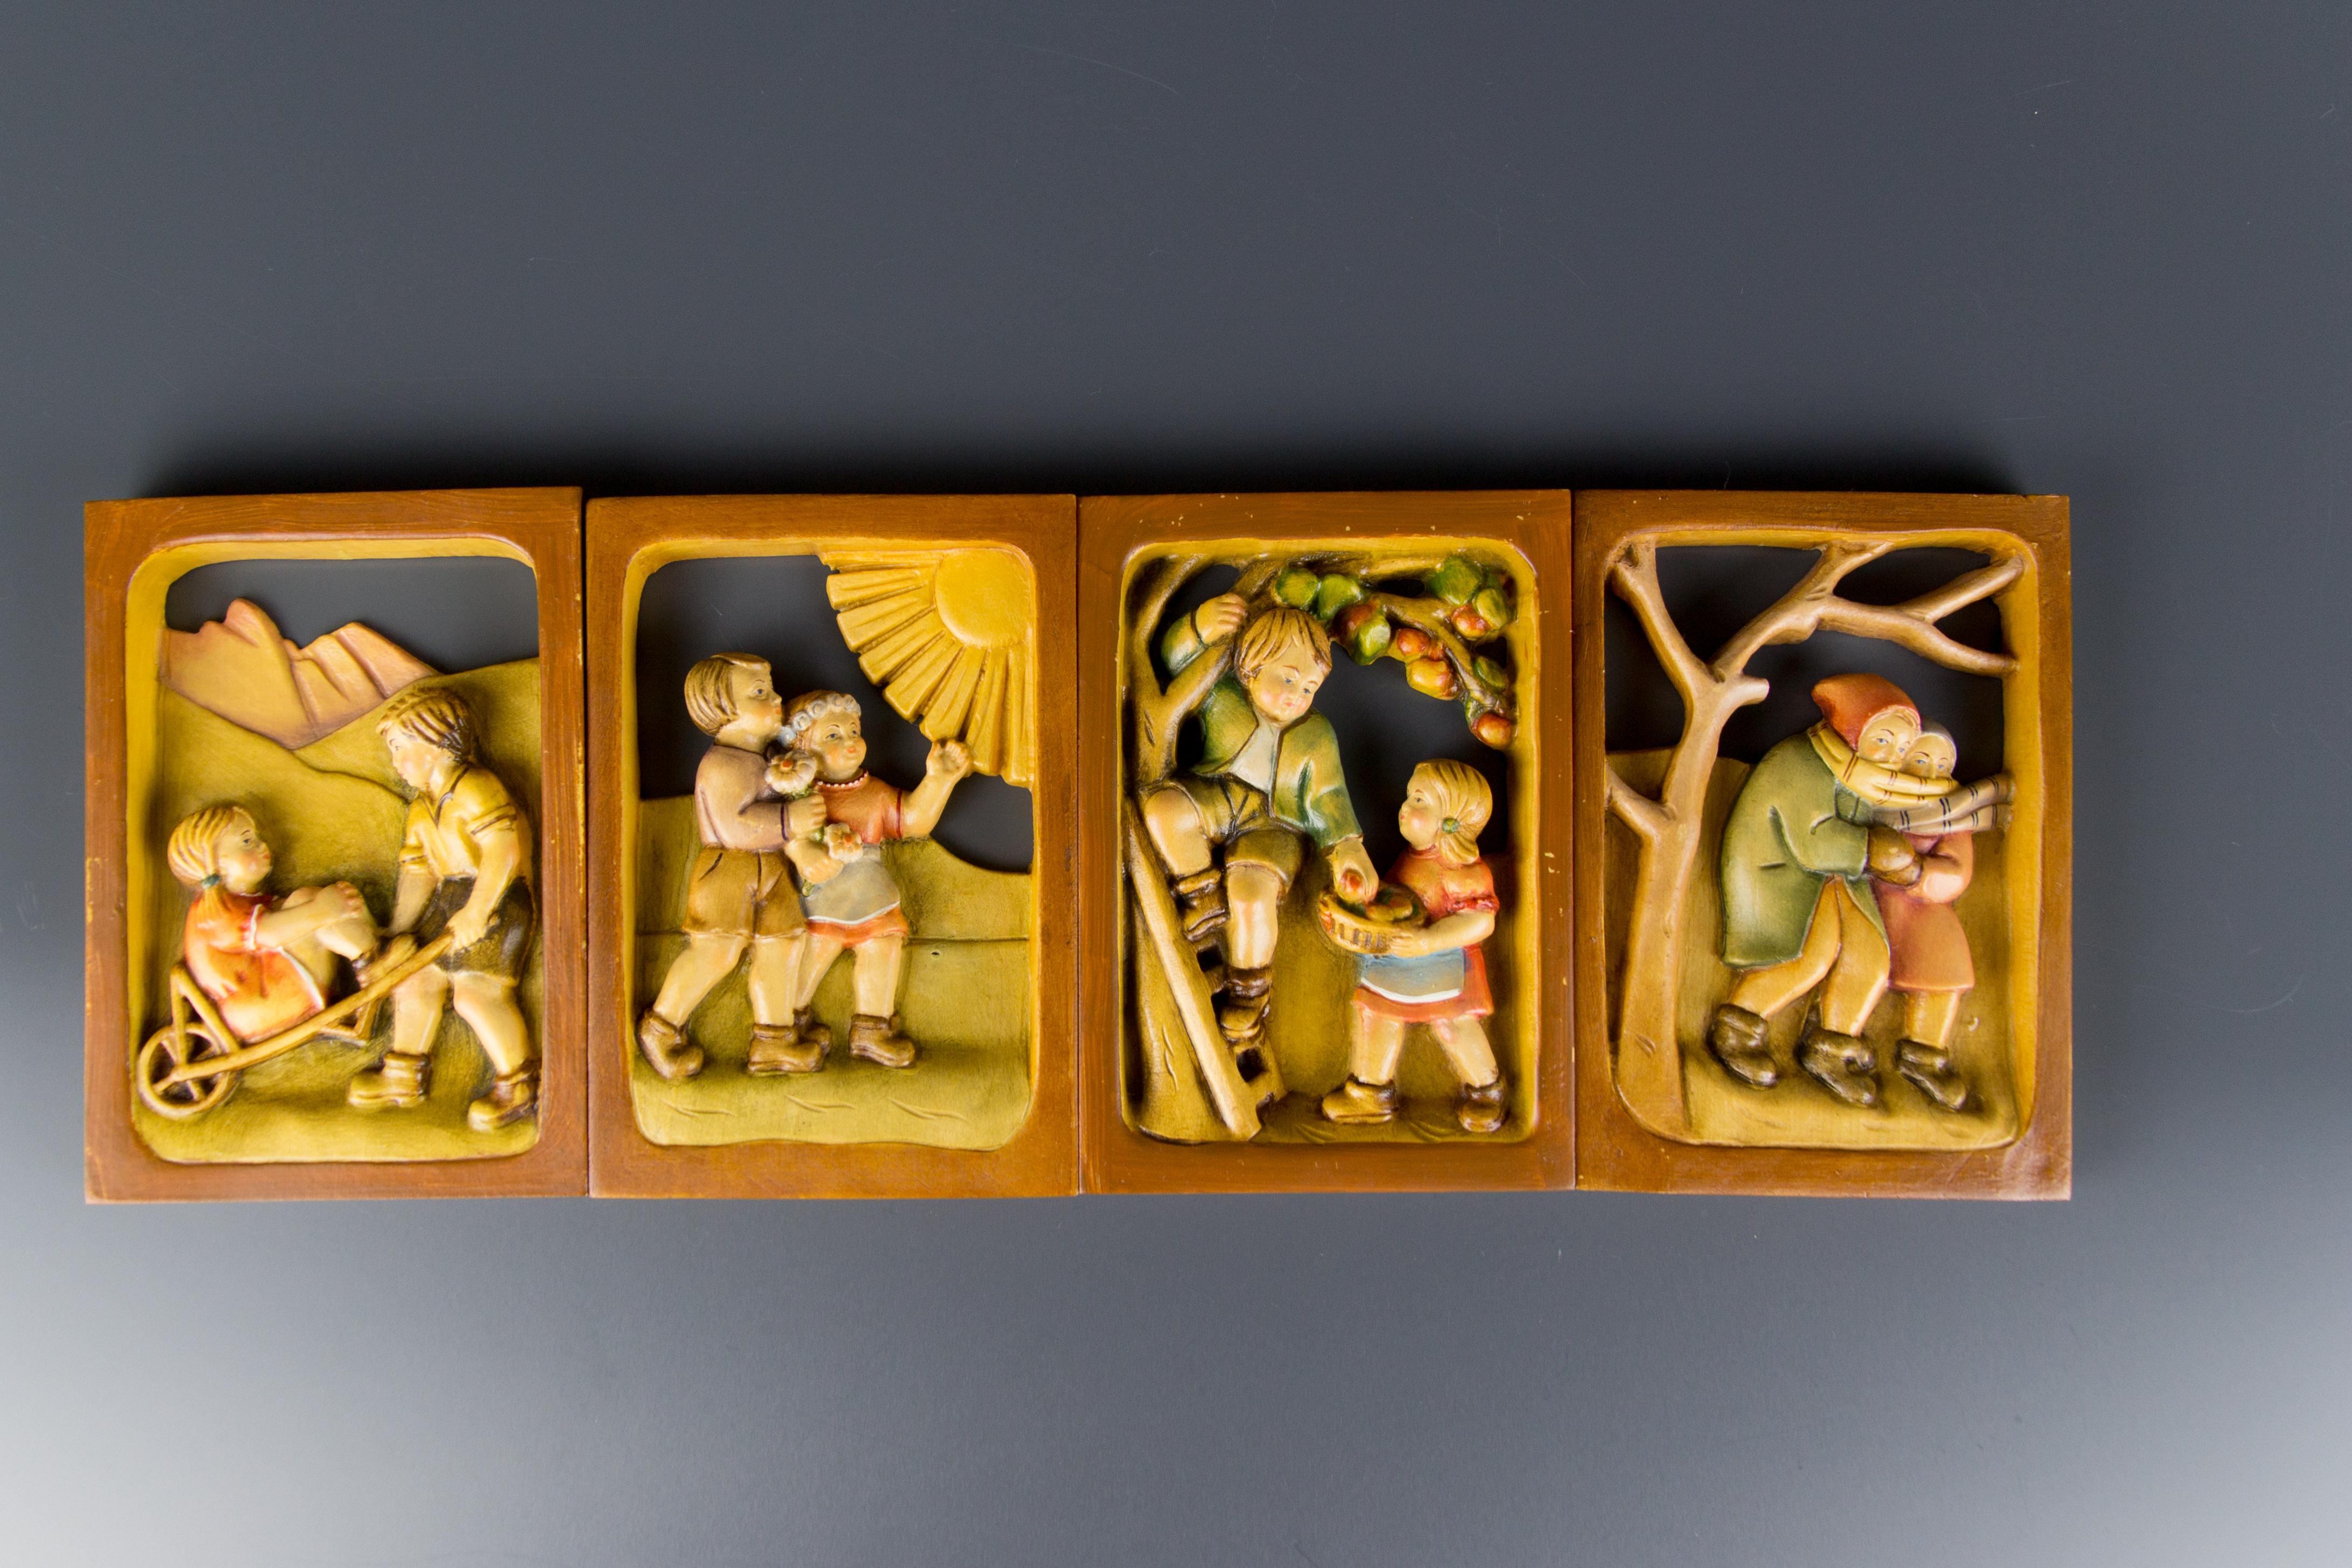 Ein entzückendes Set von vier Holzbildern, die Szenen mit niedlichen Kindern in den vier Jahreszeiten darstellen. Meisterhaft handgeschnitzt und handbemalt. Südtirol, 1980er Jahre.
Abmessungen (ein Bild): Höhe 16 cm; Breite 11 cm; Tiefe 1,5 cm.